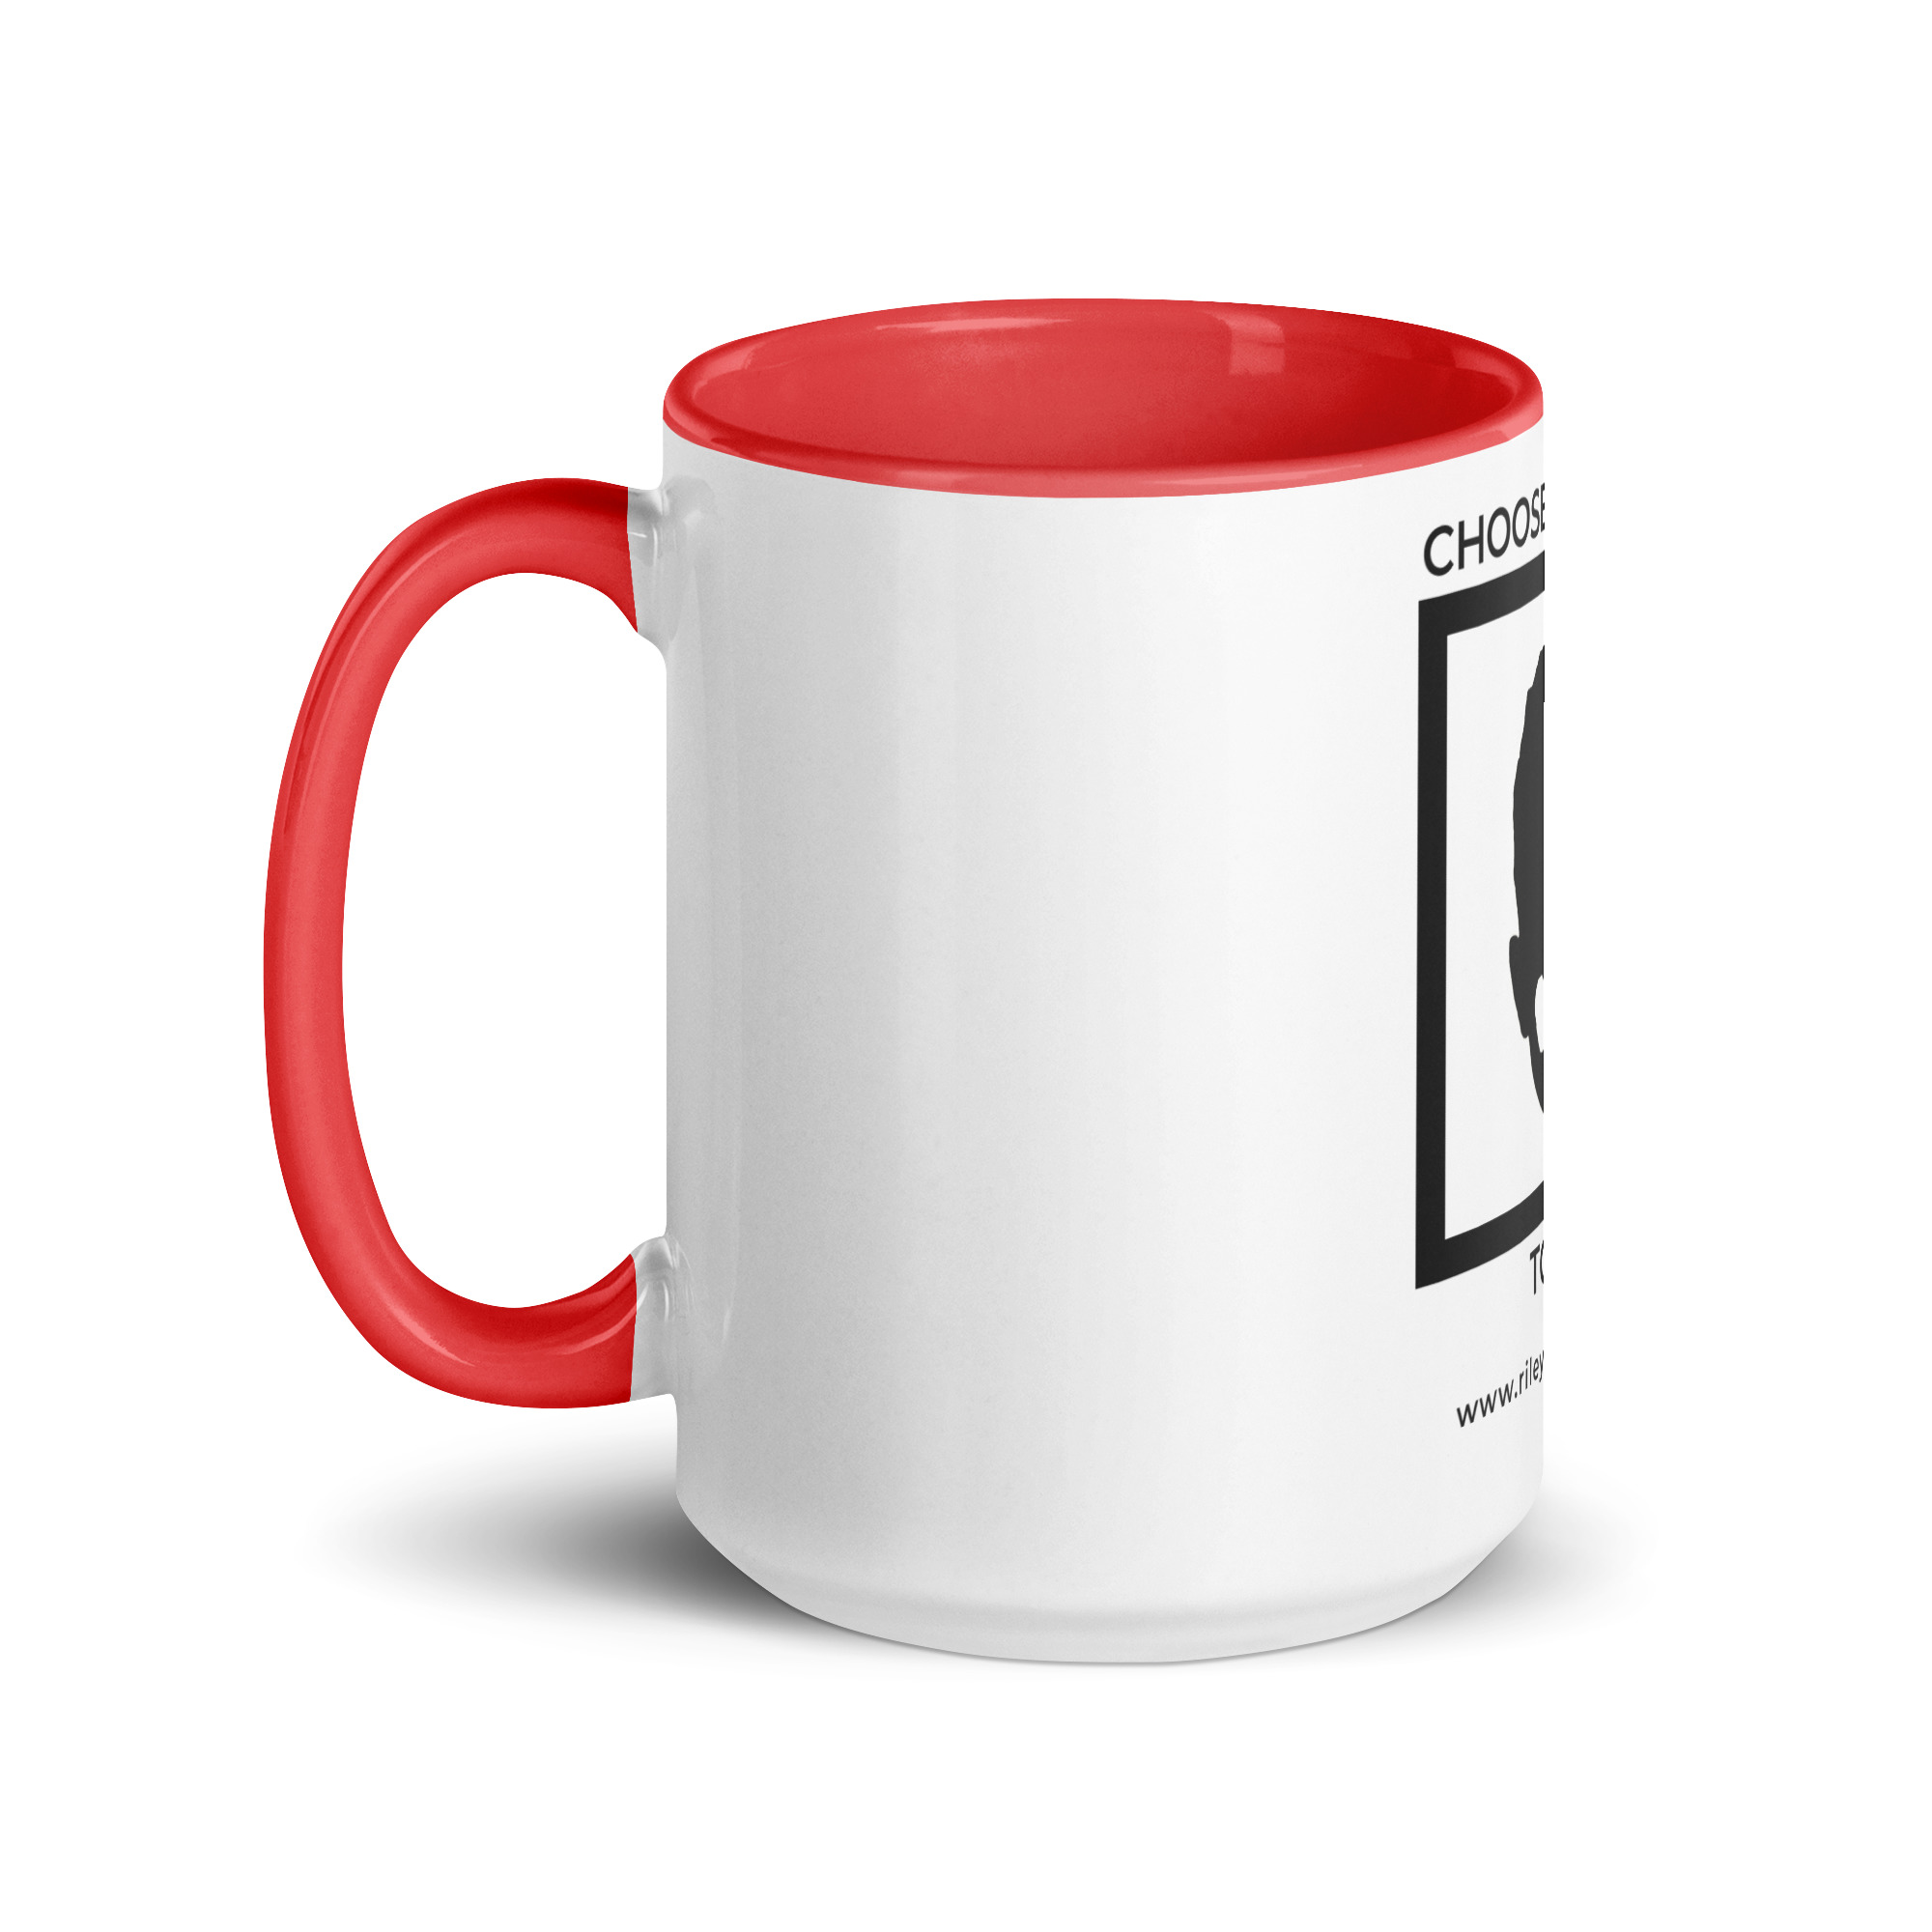 white-ceramic-mug-with-color-inside-red-15-oz-left-6522a1a403d33.jpg